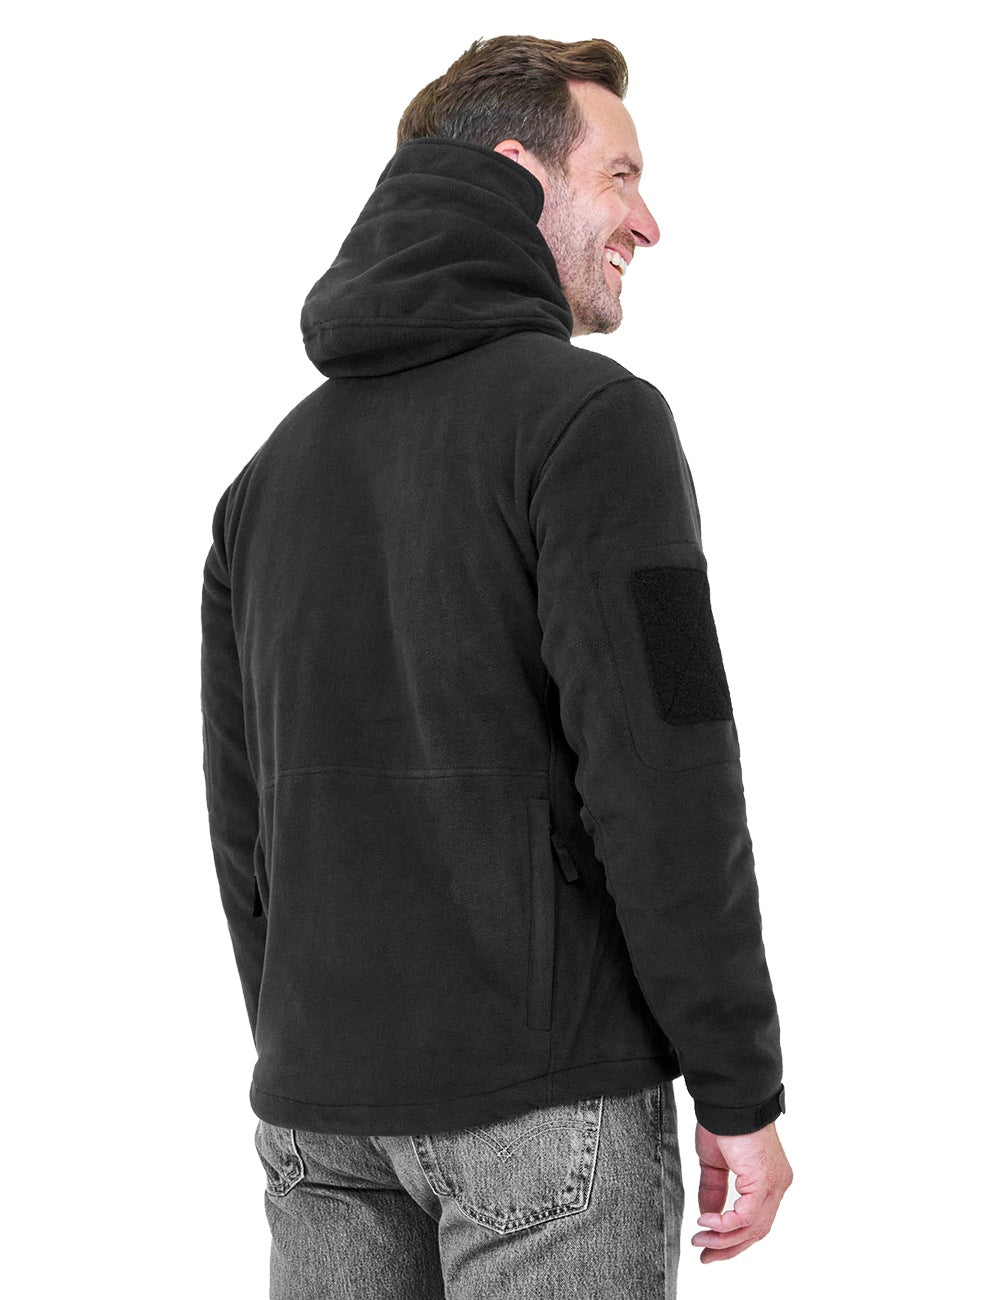 ANTARCTICA Fleece Heating Jacket, Fit Zip Hood Winter Jacket For Men